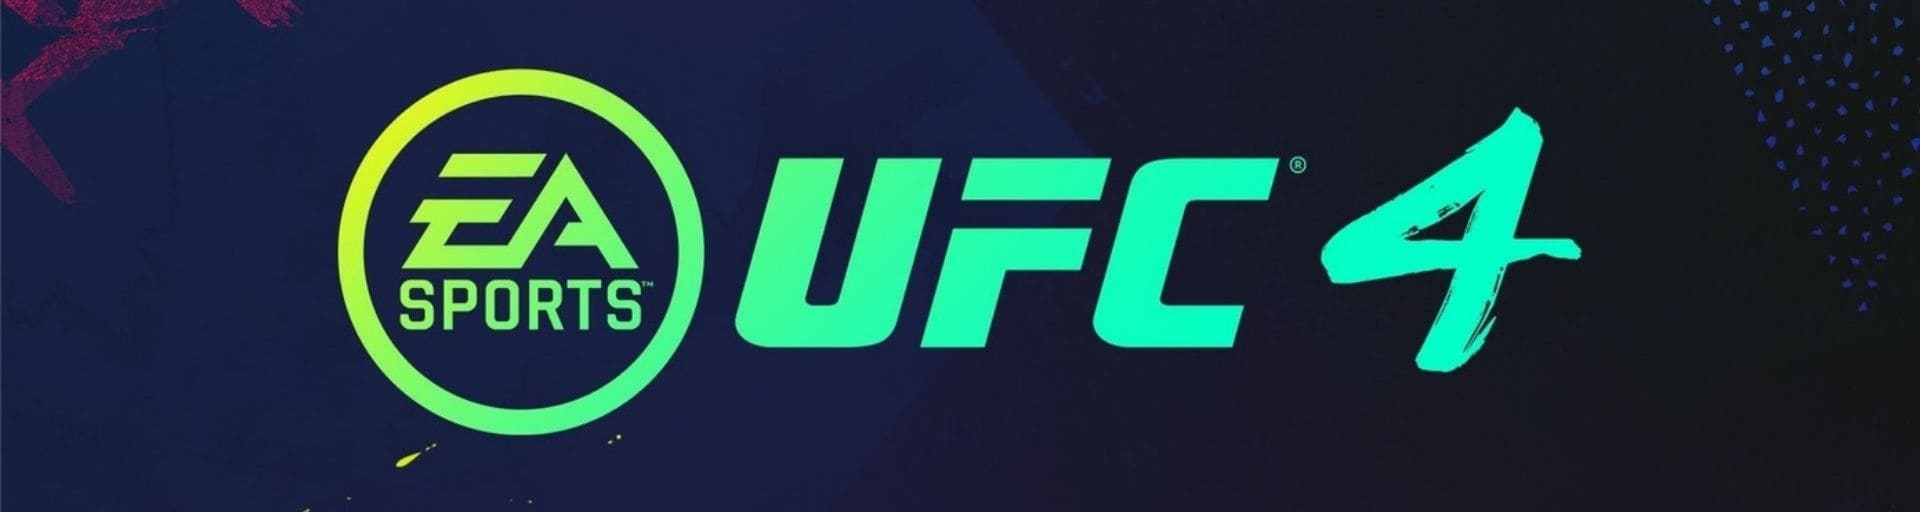 UFC 255